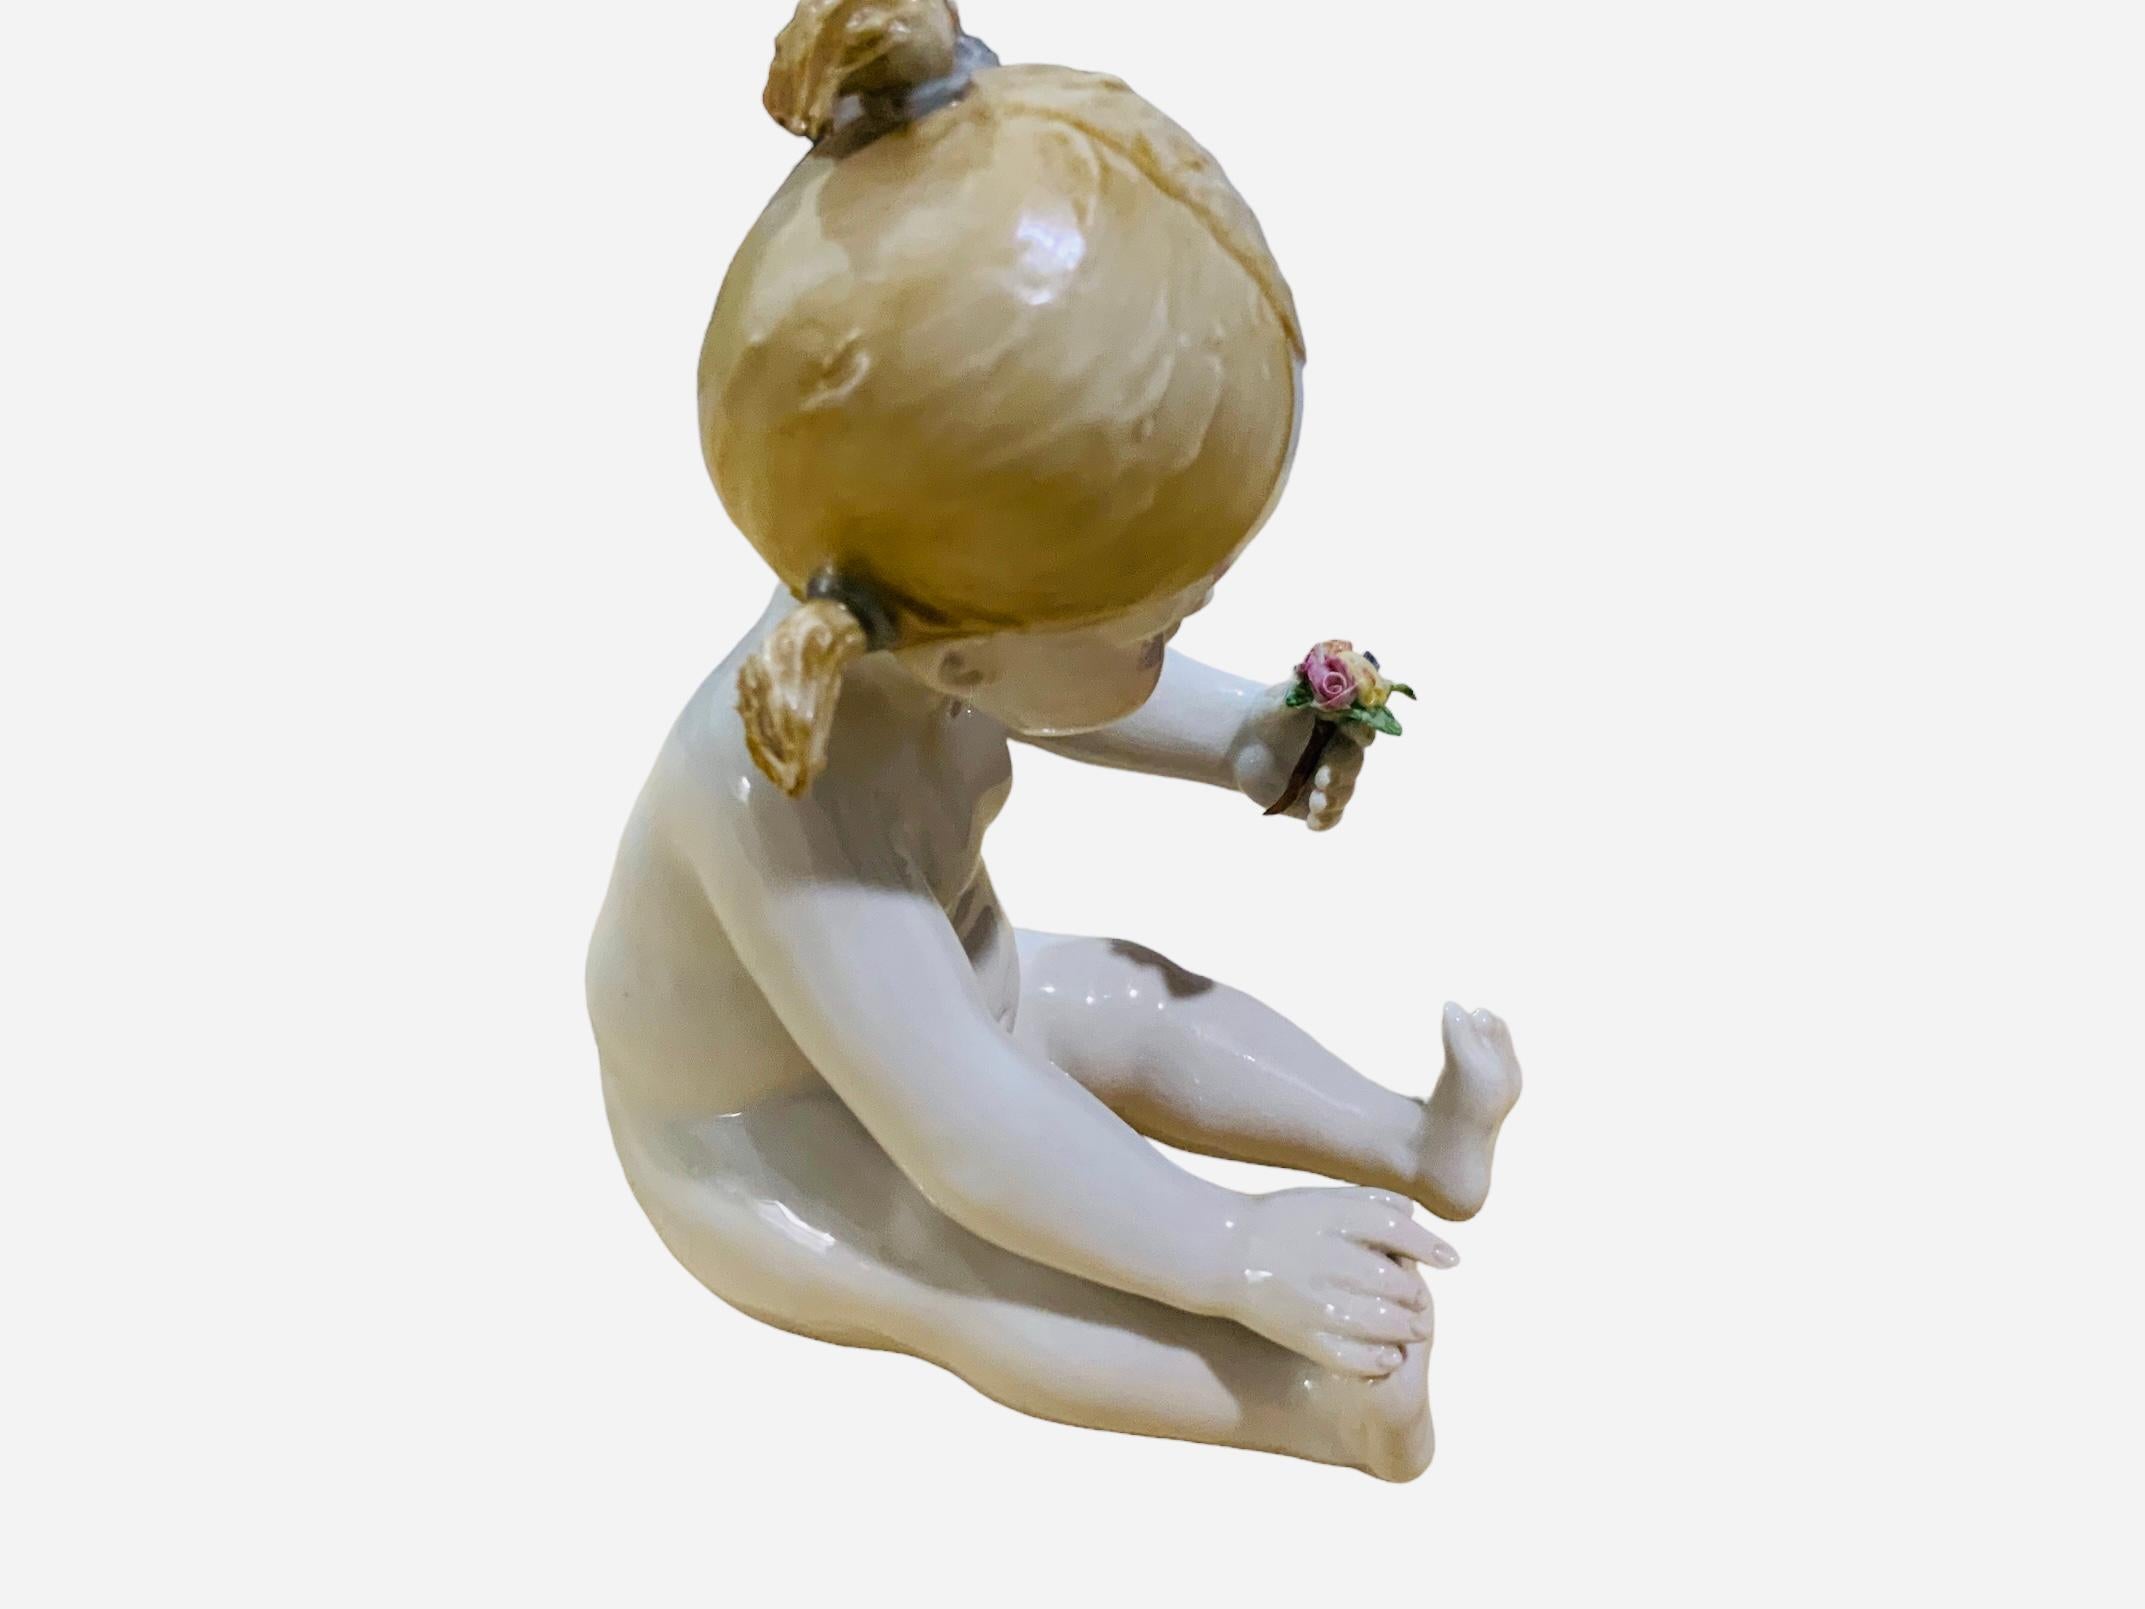 Il s'agit d'une figurine en porcelaine italienne de Capodimonte représentant une petite fille au piano. Elle représente une petite fille nue aux grands yeux bleus et aux cheveux blonds arrangés en queue de cheval, assise et admirant un bouquet de